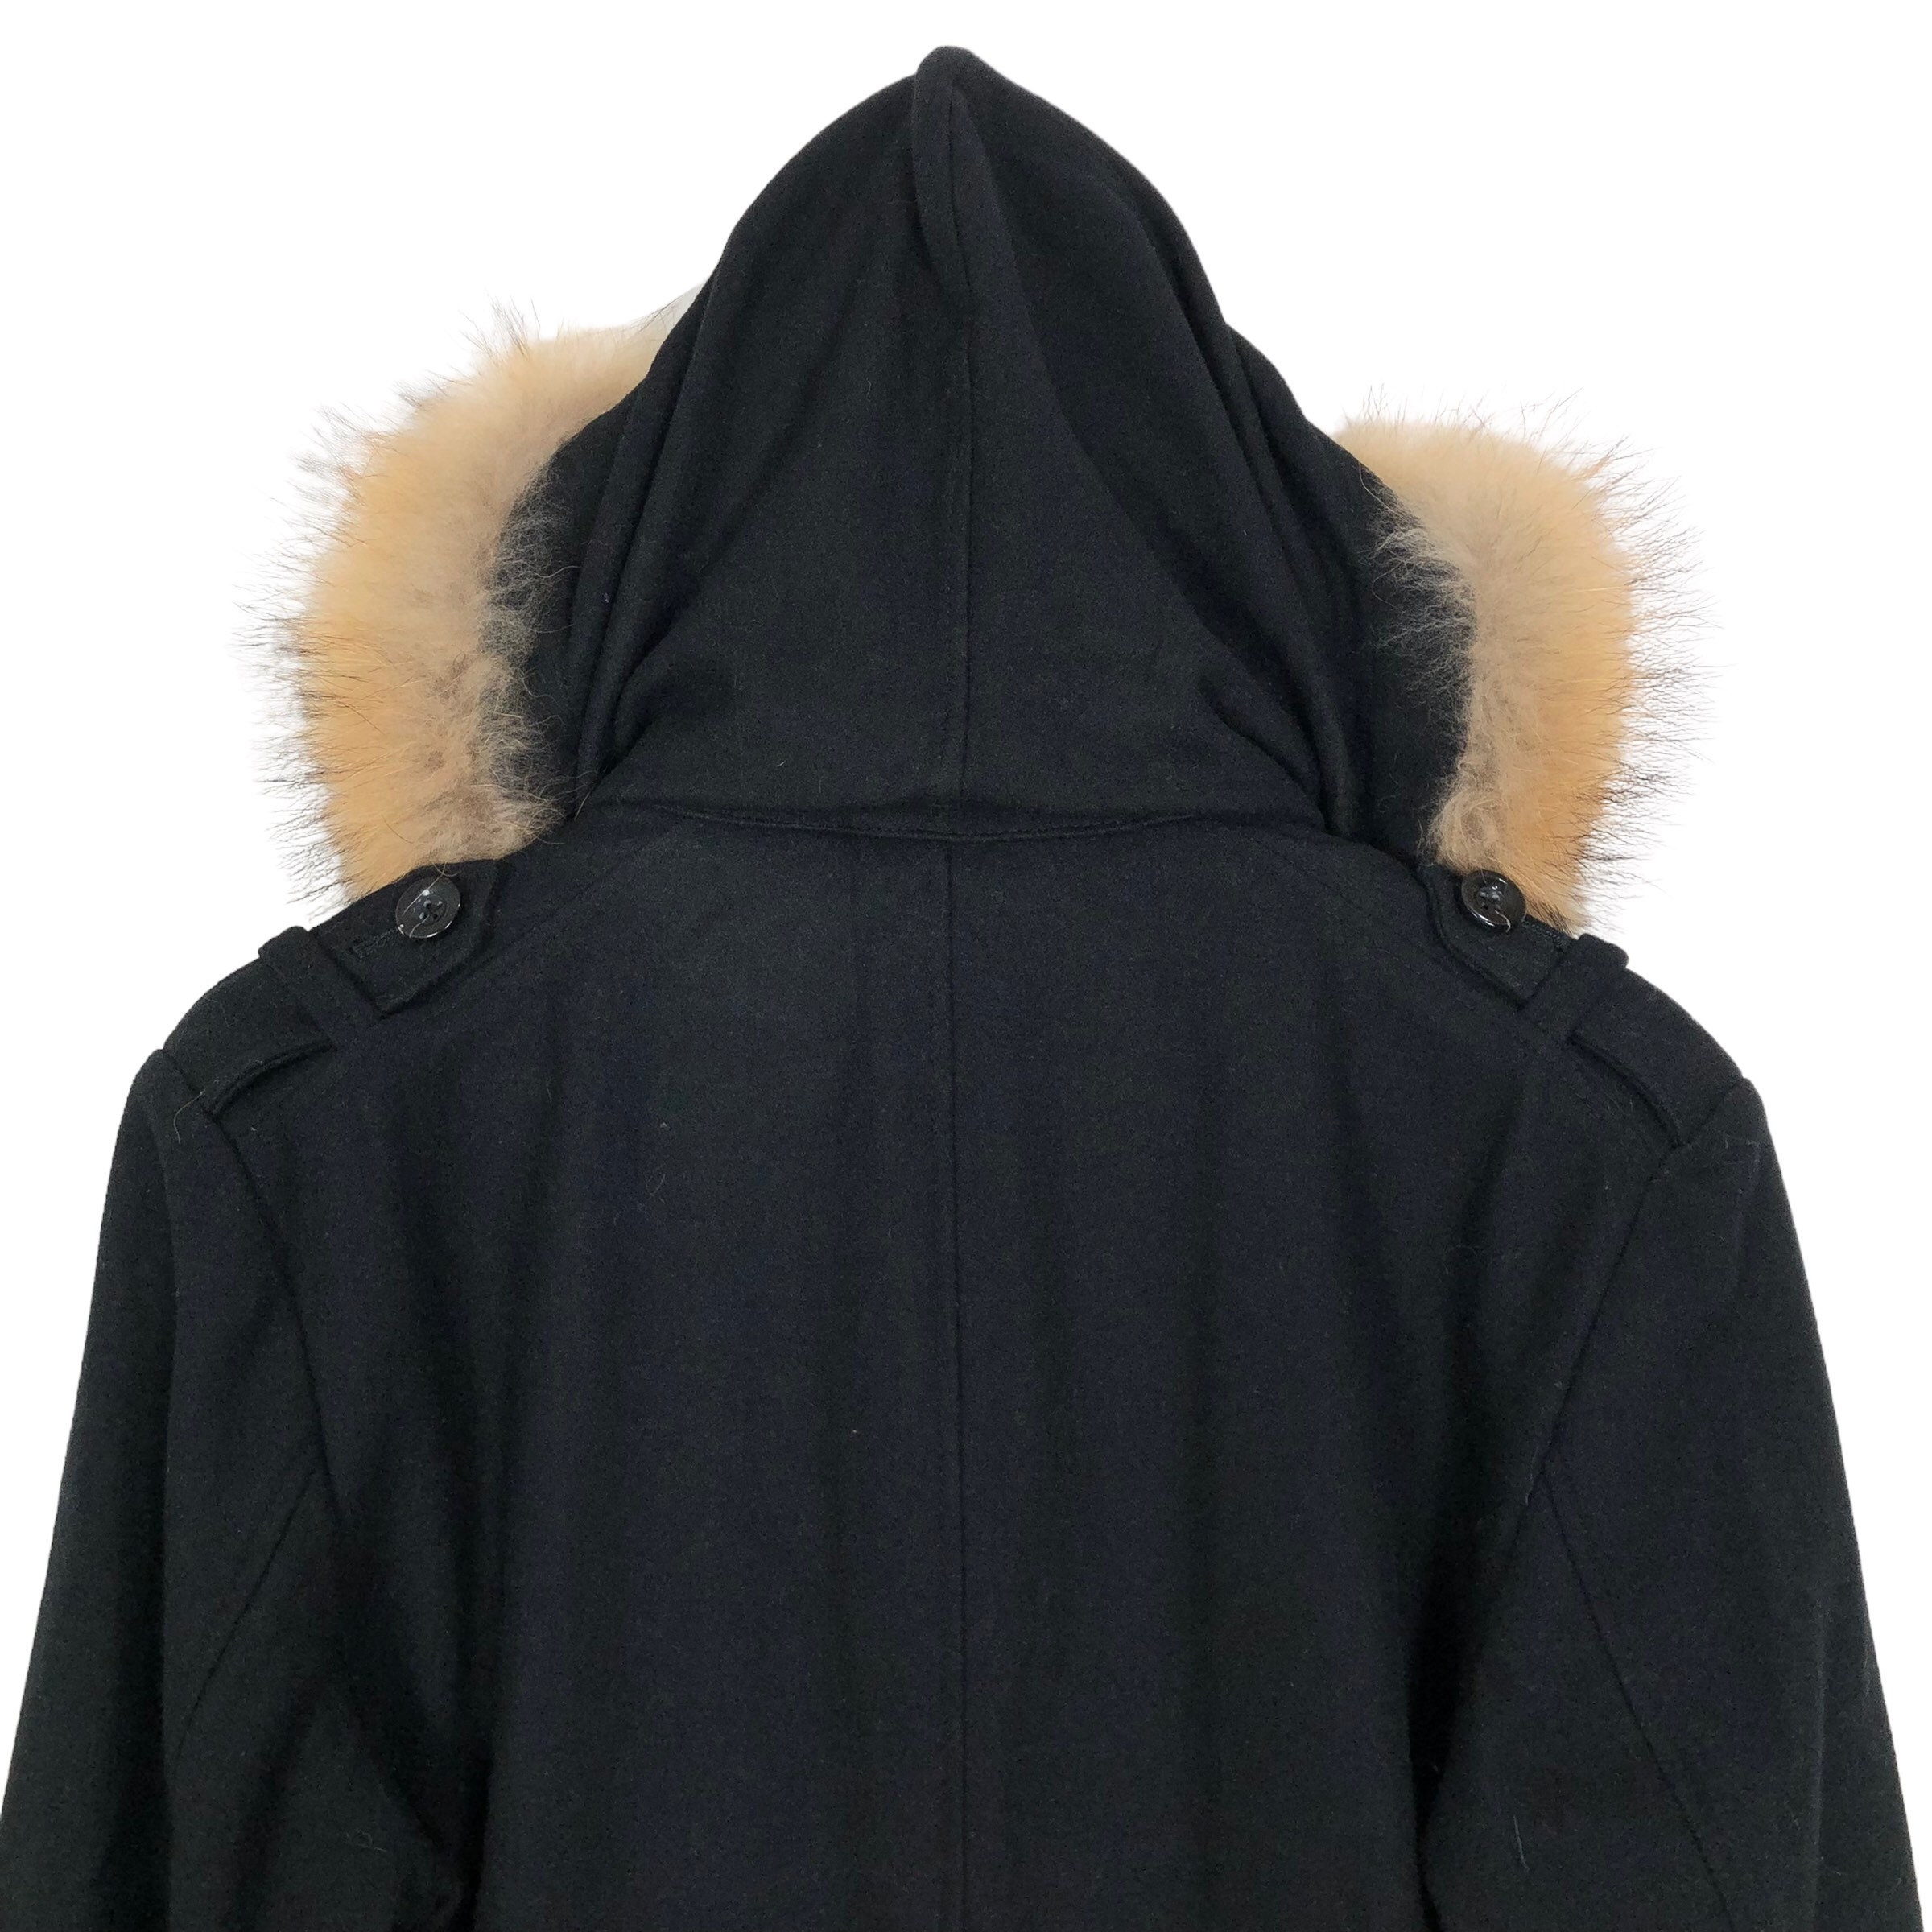 PPFM Wool Fur Hooded Jacket Full Zip Detachable Hoodie Peyton - Etsy